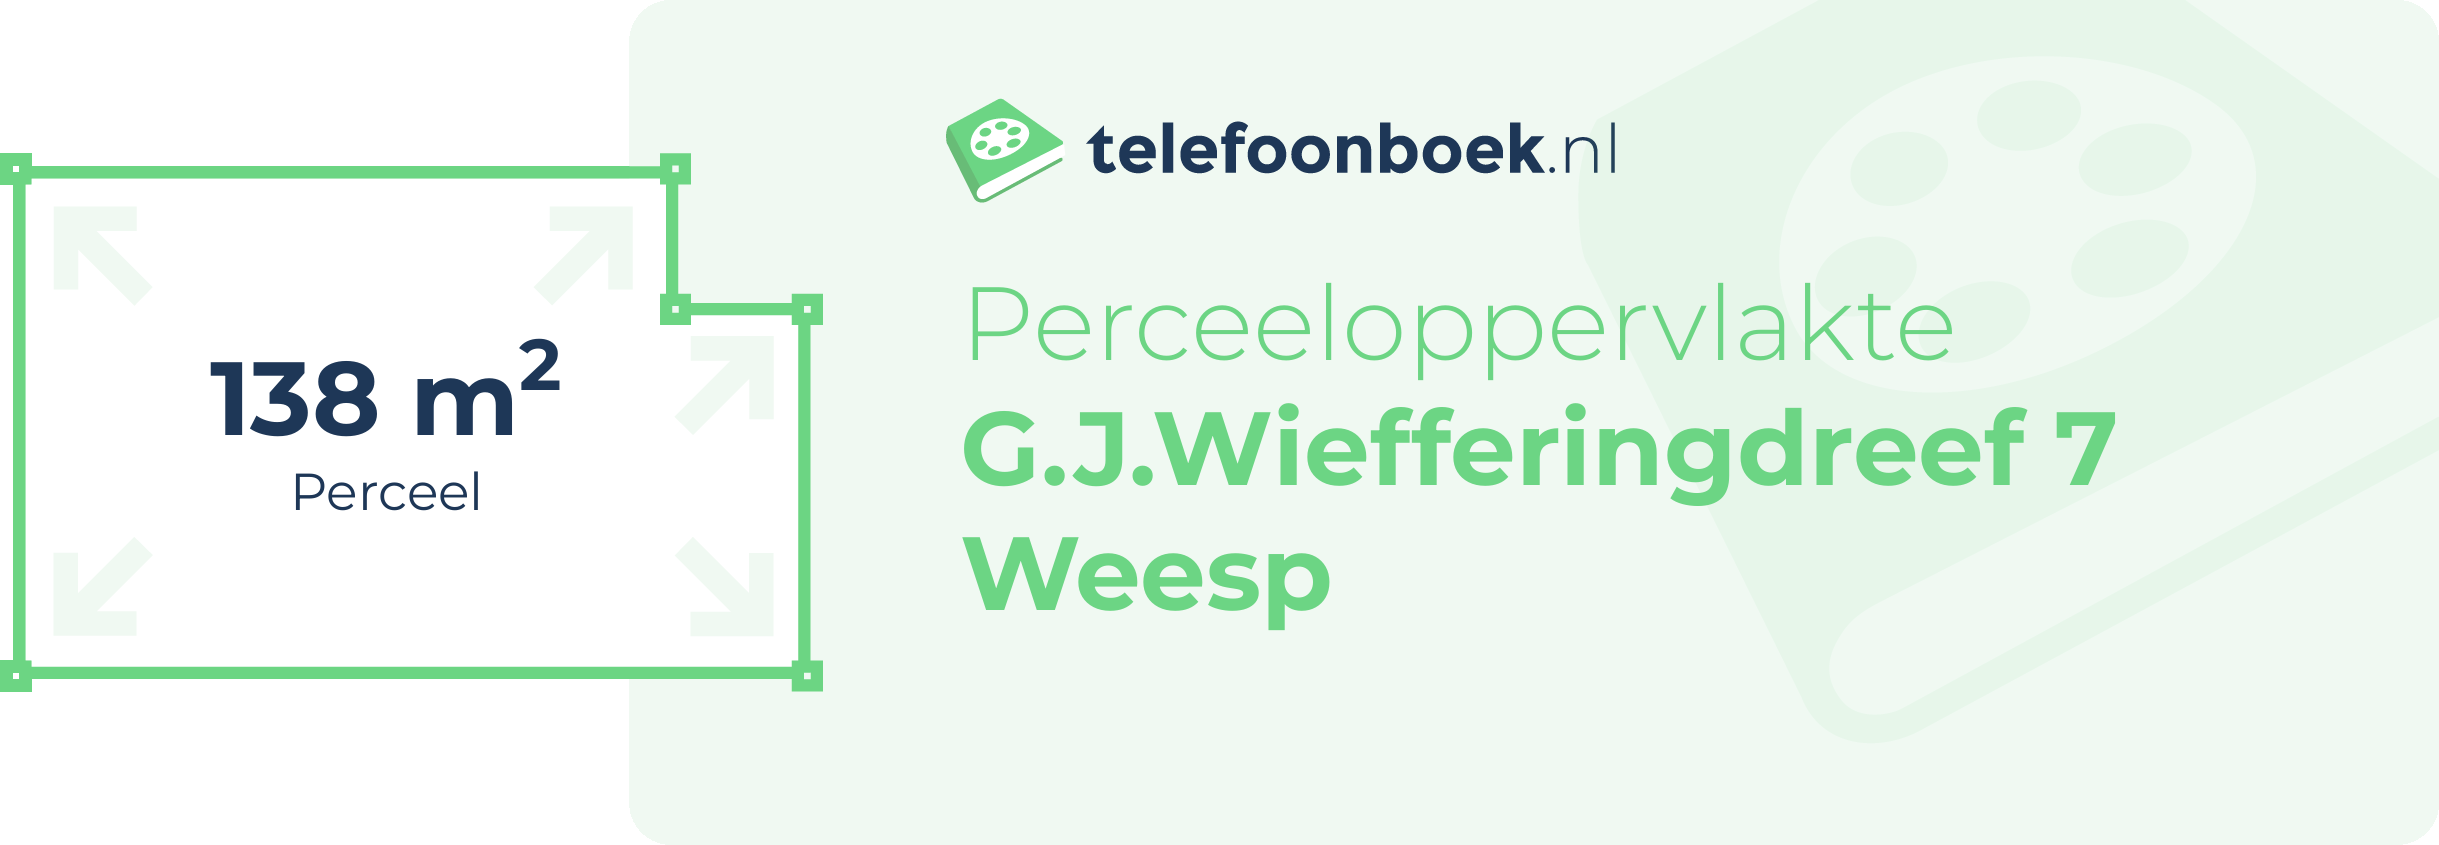 Perceeloppervlakte G.J.Wiefferingdreef 7 Weesp